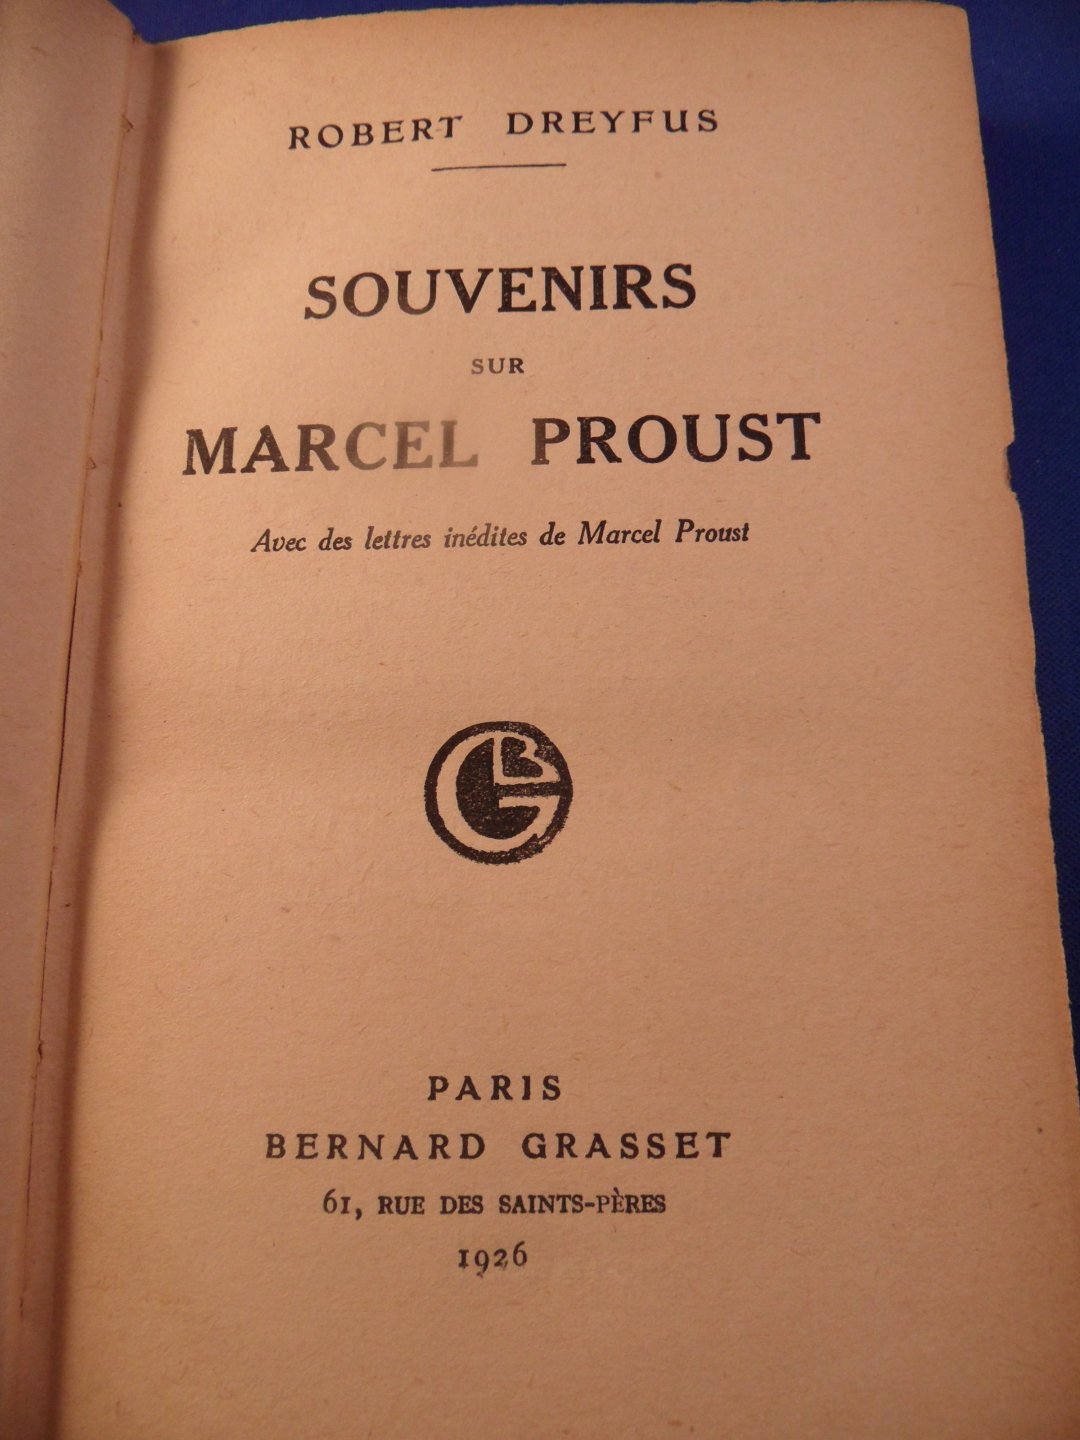 Dreyfus, Robert - Souvenirs sur Marcel Proust